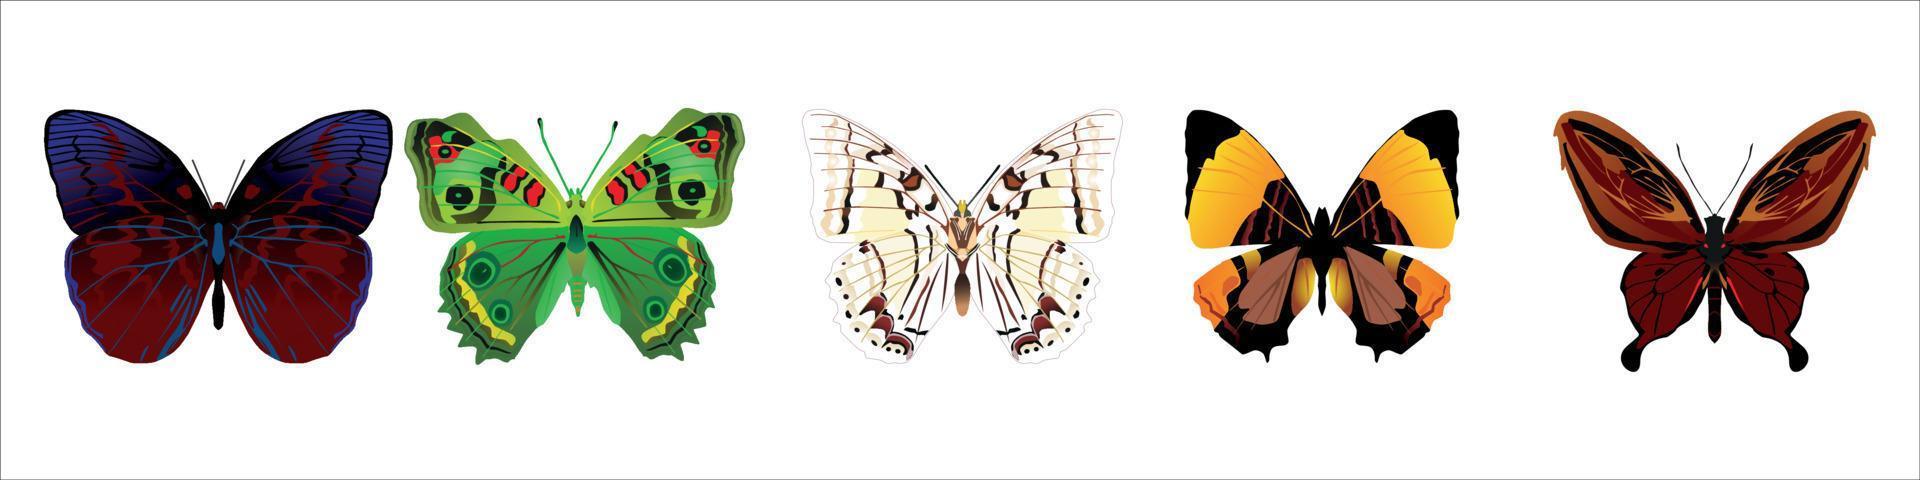 uppsättning färgglada tecknade fjärilar på vit bakgrund. vektor